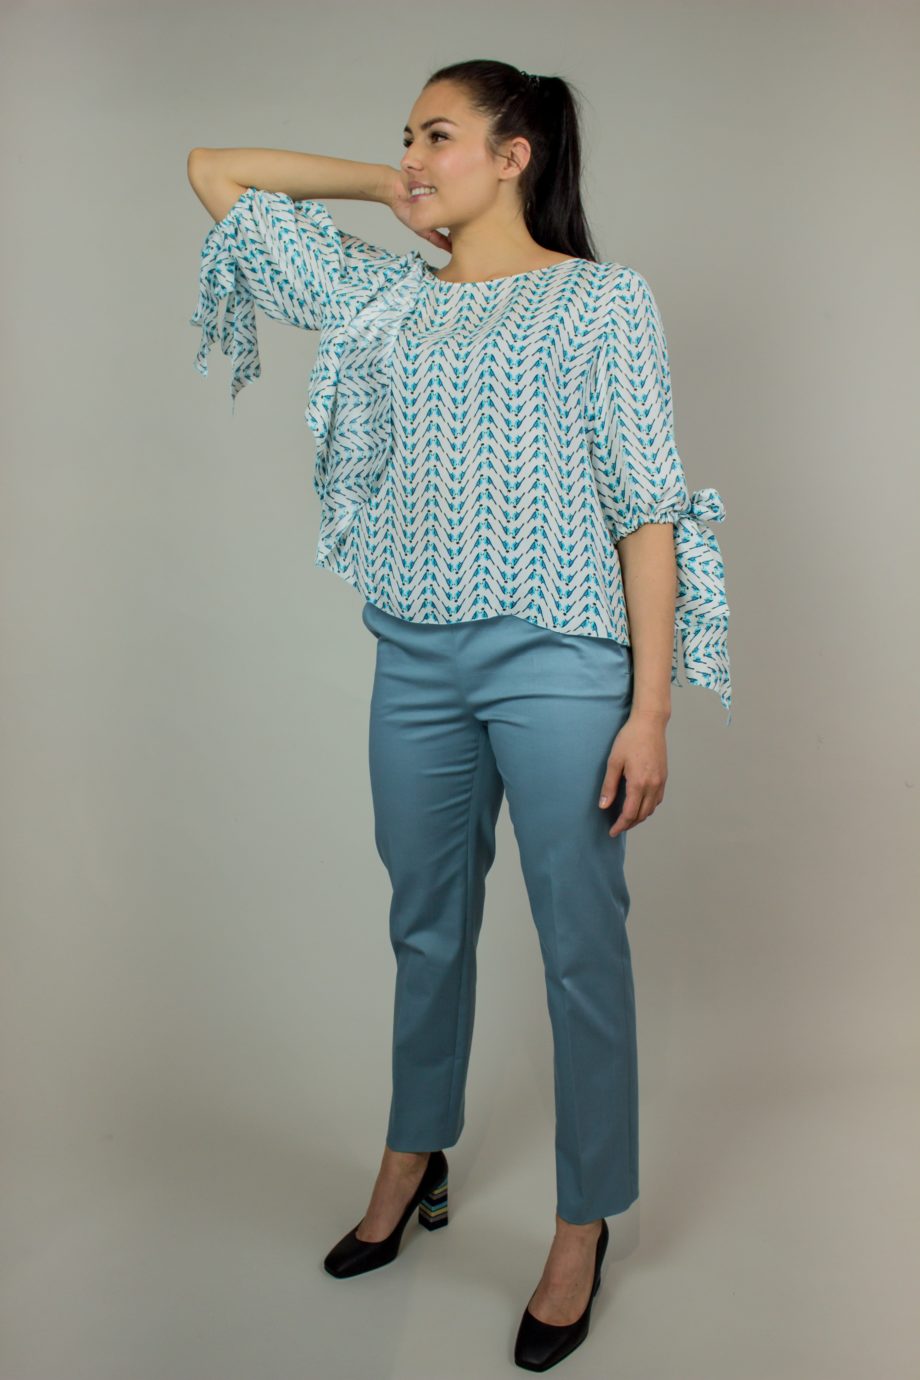 10. KRISTINA TI Turquoise silk blouse